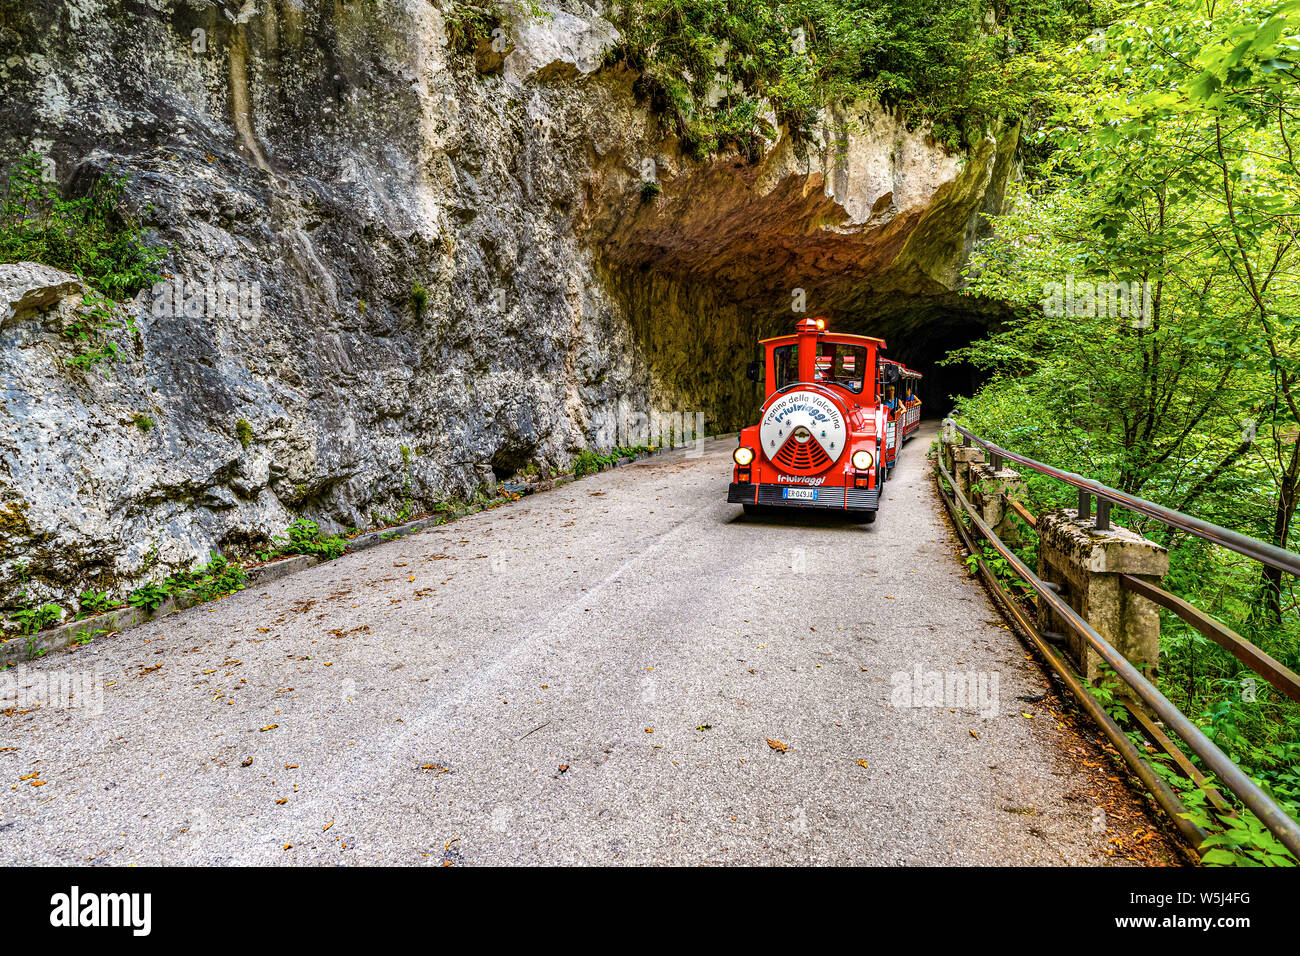 Italia Friuli Val Cellina Barcis - vecchia strada della Valcellina - Parco Naturale delle Dolomiti Friulane Foto Stock